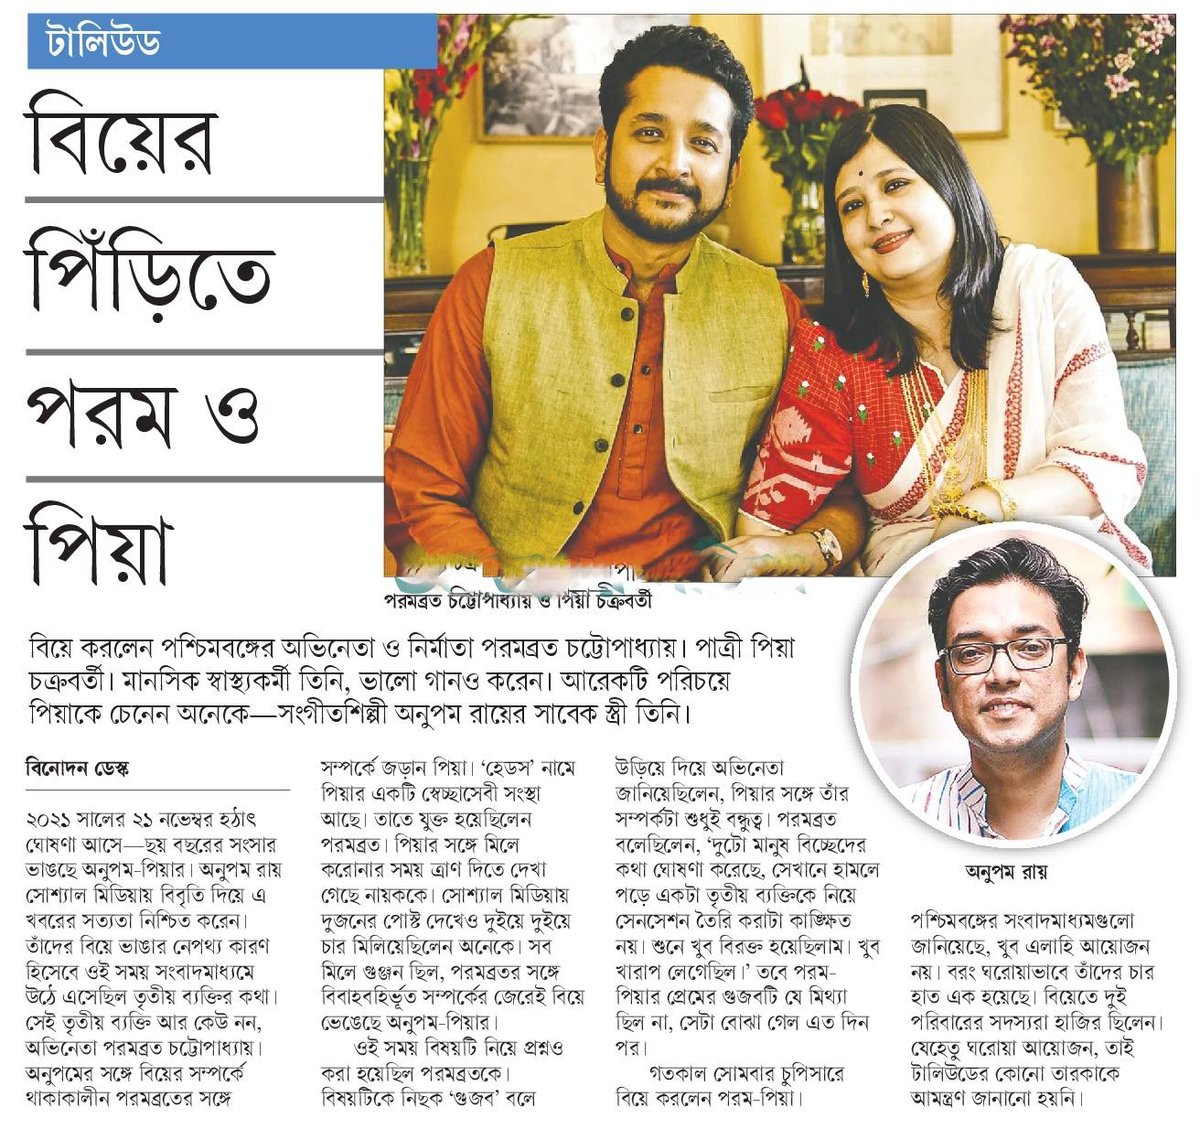 বিয়ের পিঁড়িতে পরম ও পিয়া... #EntertainmentNews #Bangladesh #Newspaper #বাংলাদেশ #বিনোদন #ParambrataChatterjee #PiaChakraborty @paramspeak